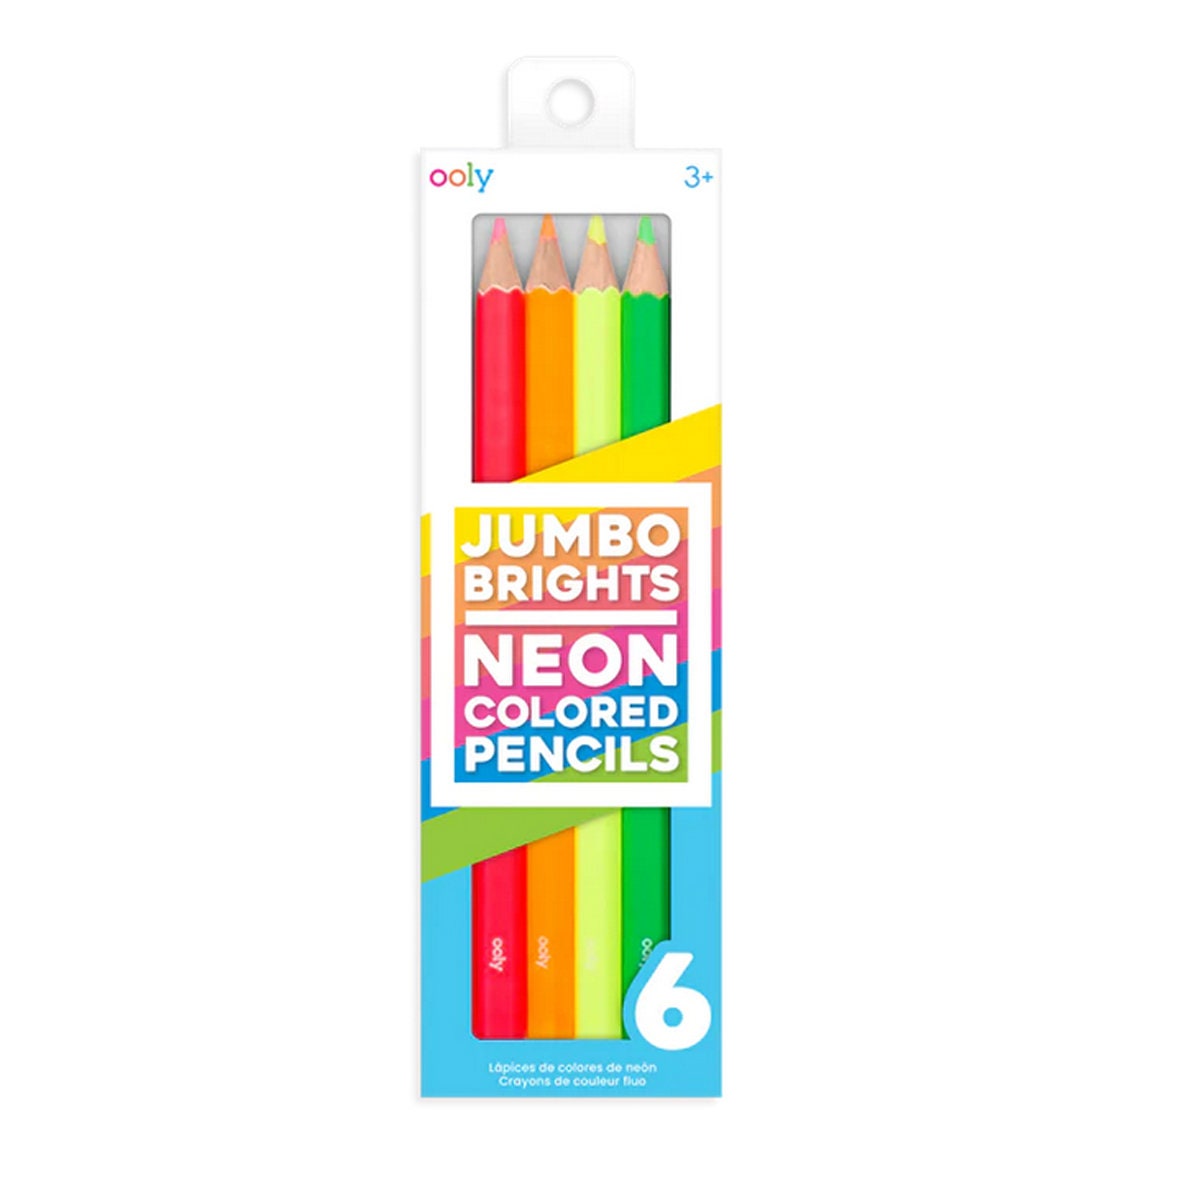 24 Pastel Colors Mini Gel Pen Set, Neon Colors Gel Pen Set, Colored Pens,  Calligraphy Pens, Drawing Pens, Pen Stationery Sets Adult/kids 